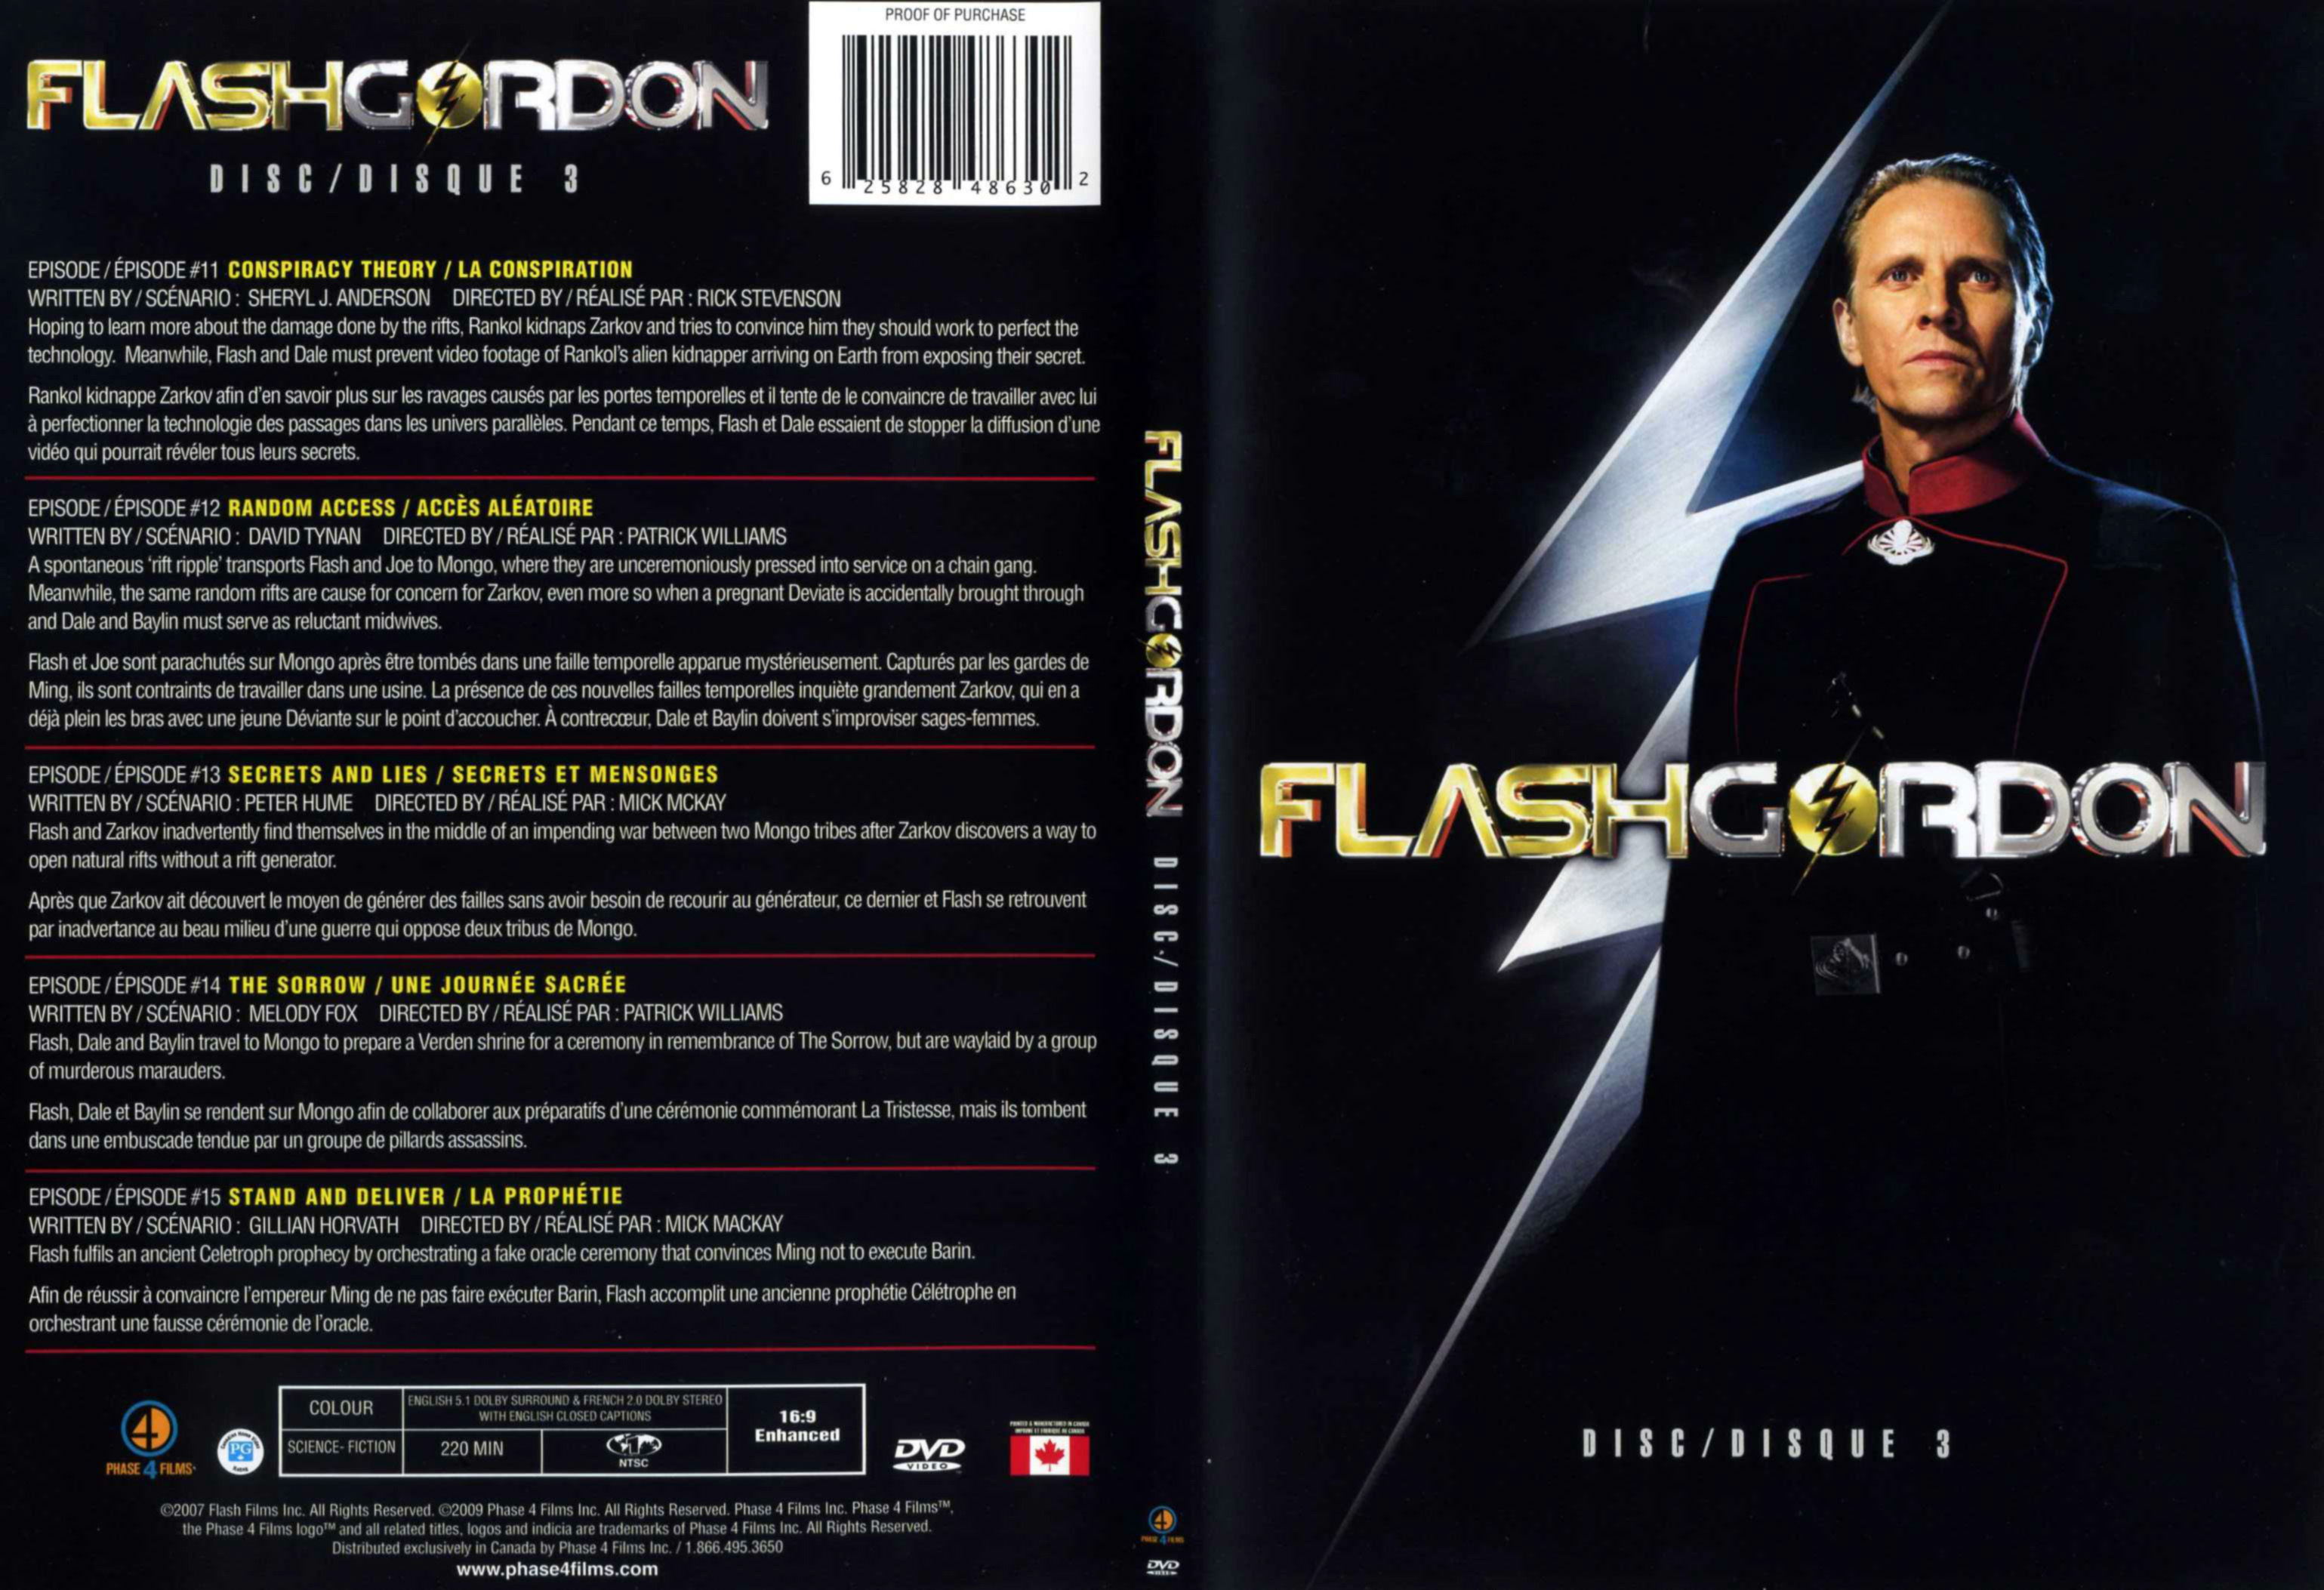 Jaquette DVD Flash Gordon Saison 1 DVD 3